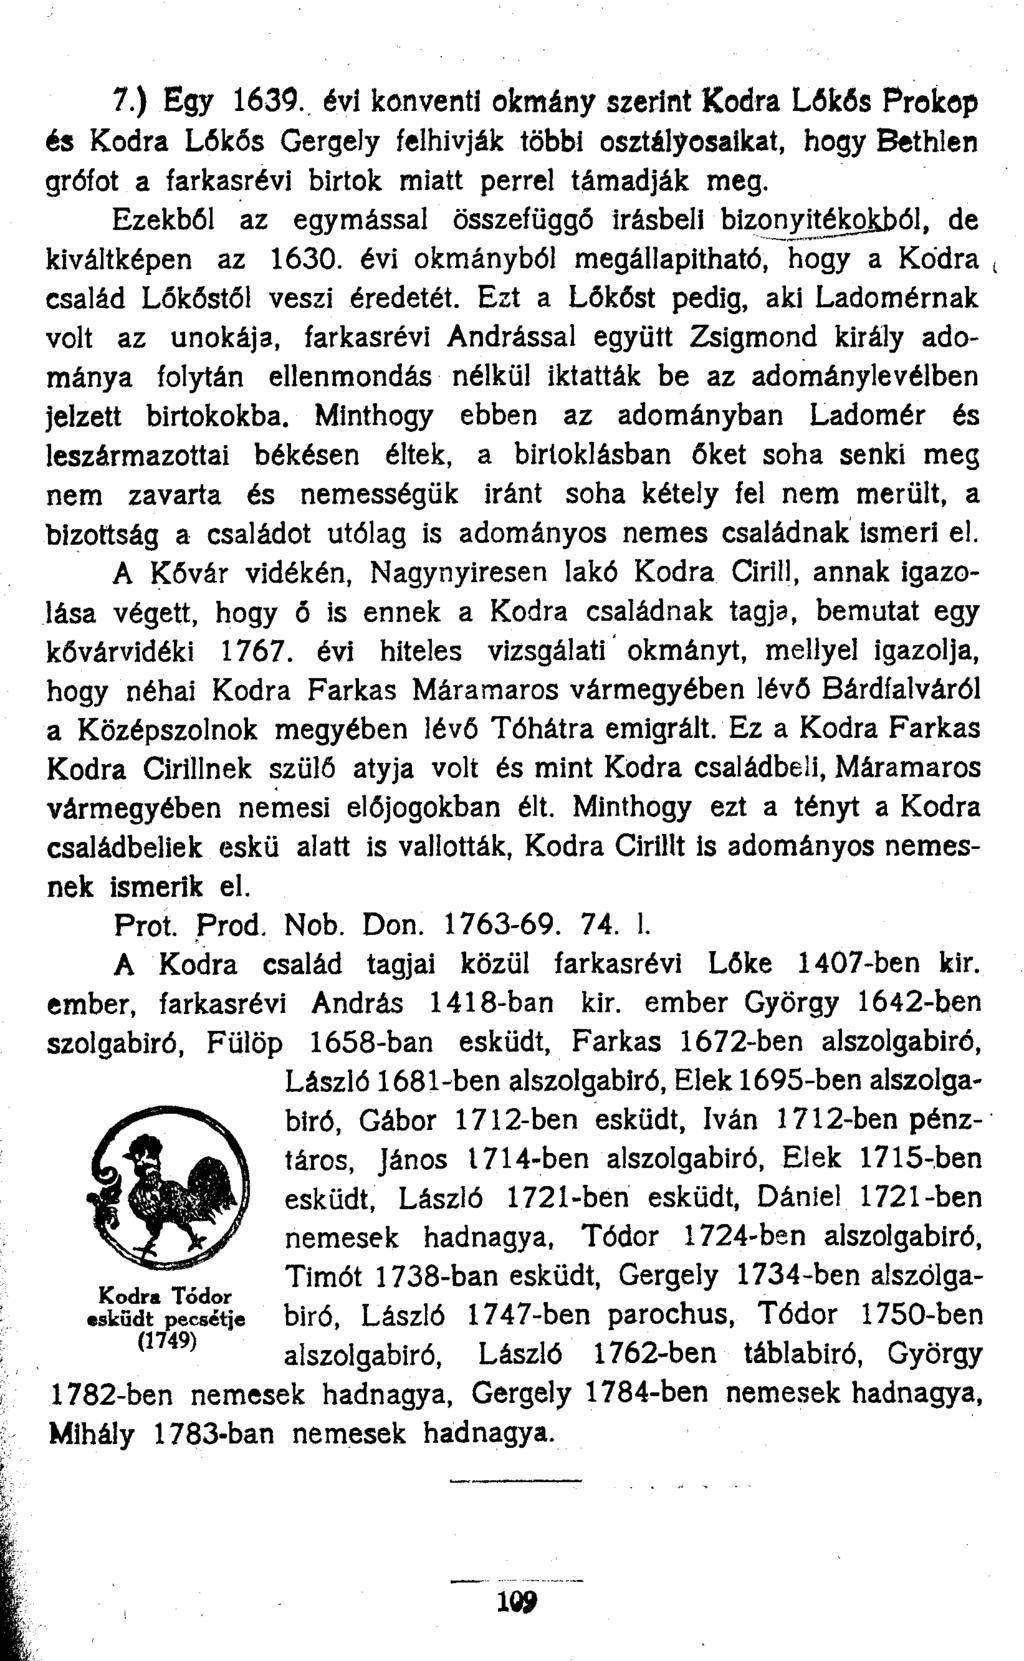 7.) Egy 1639., évi konventi okmány szerint Kodra Lőkős Prokop és Kodra Lőkős Gergely felhívják többi osztályosaikat, hogy Bethlen grófot a farkasrévi birtok miatt perrel támadják meg.